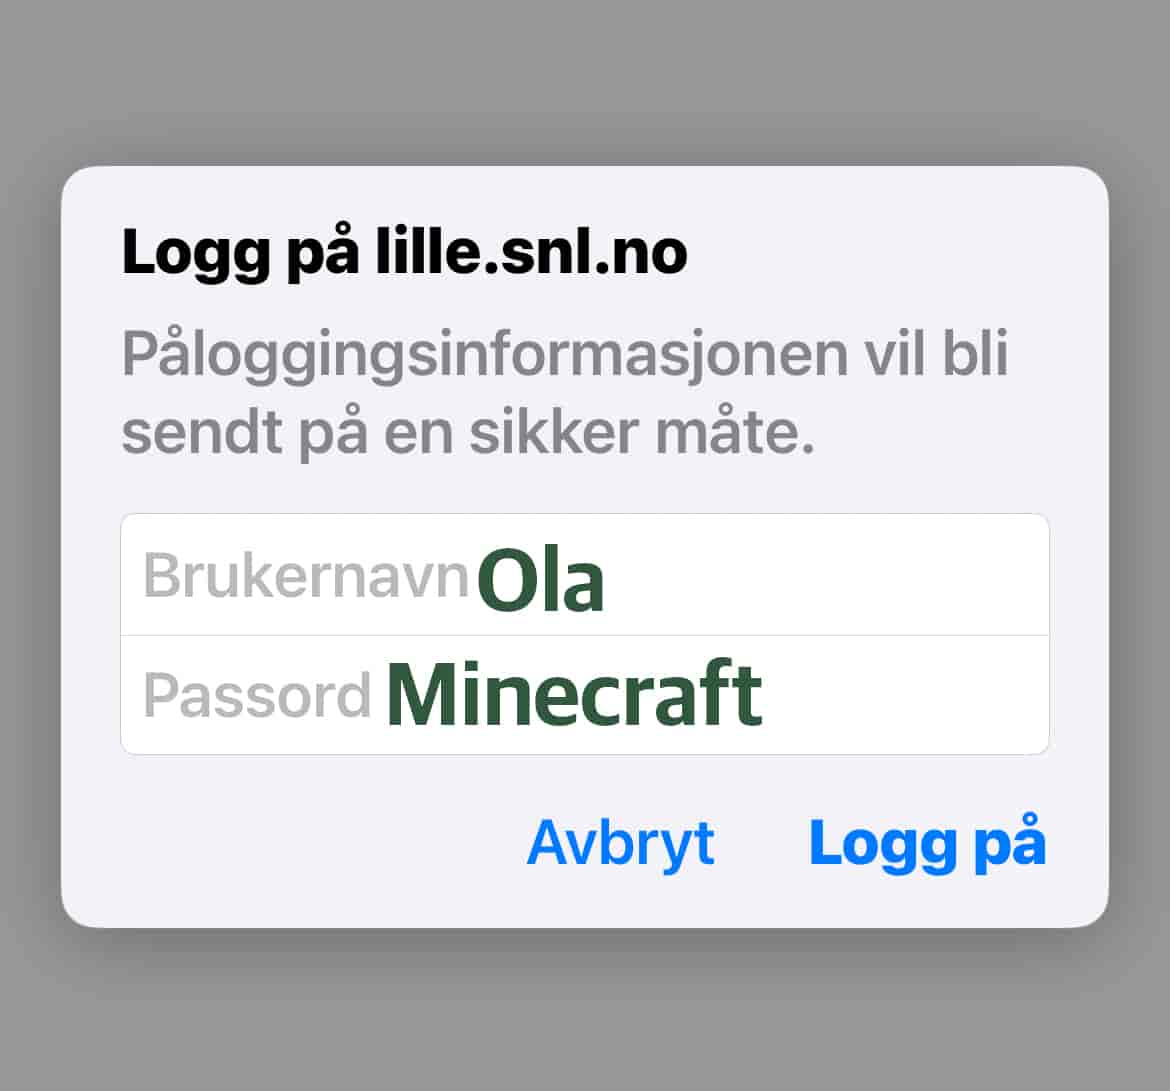 En pålogging hvor det står brukernavn: Ola og Passord: Minecraft